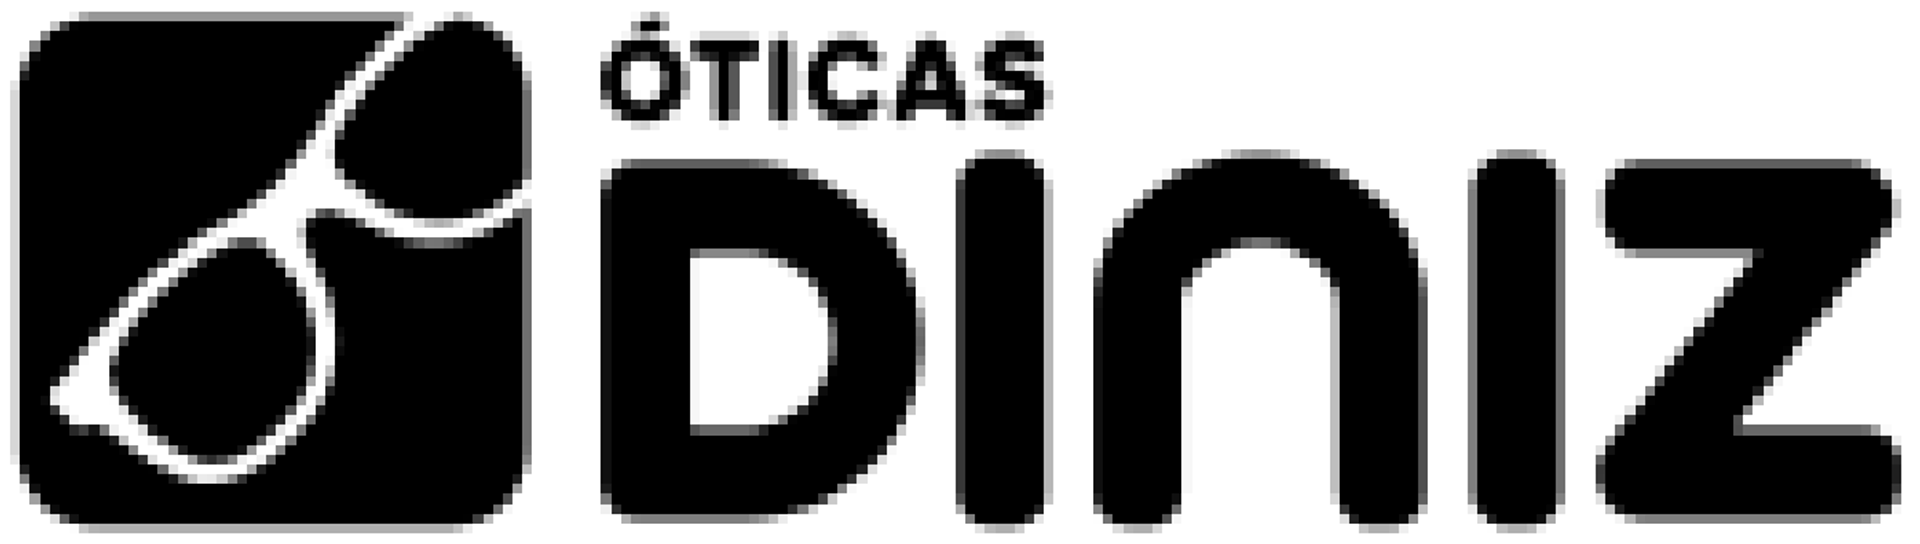 ÓTICAS DINIZ logo